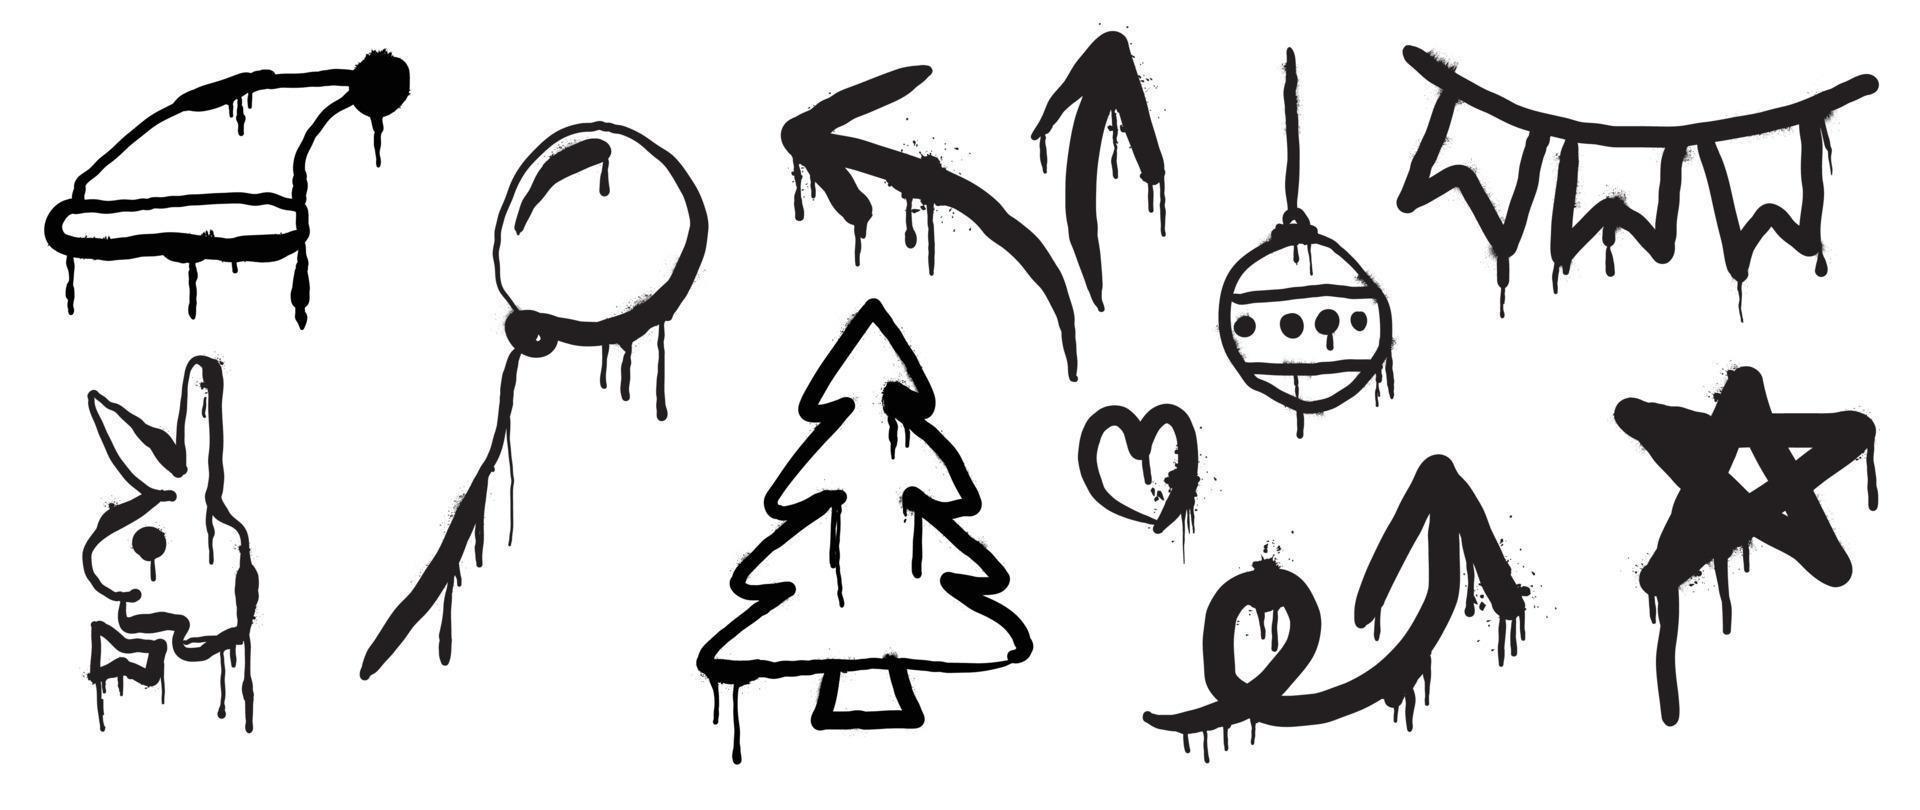 conjunto de elementos navideños vector de pintura en aerosol negro. graffiti, elementos grunge de sombrero de santa, globo, árbol, conejo, adorno, estrella sobre fondo blanco. ilustración de diseño para decoración, tarjeta, pegatina.